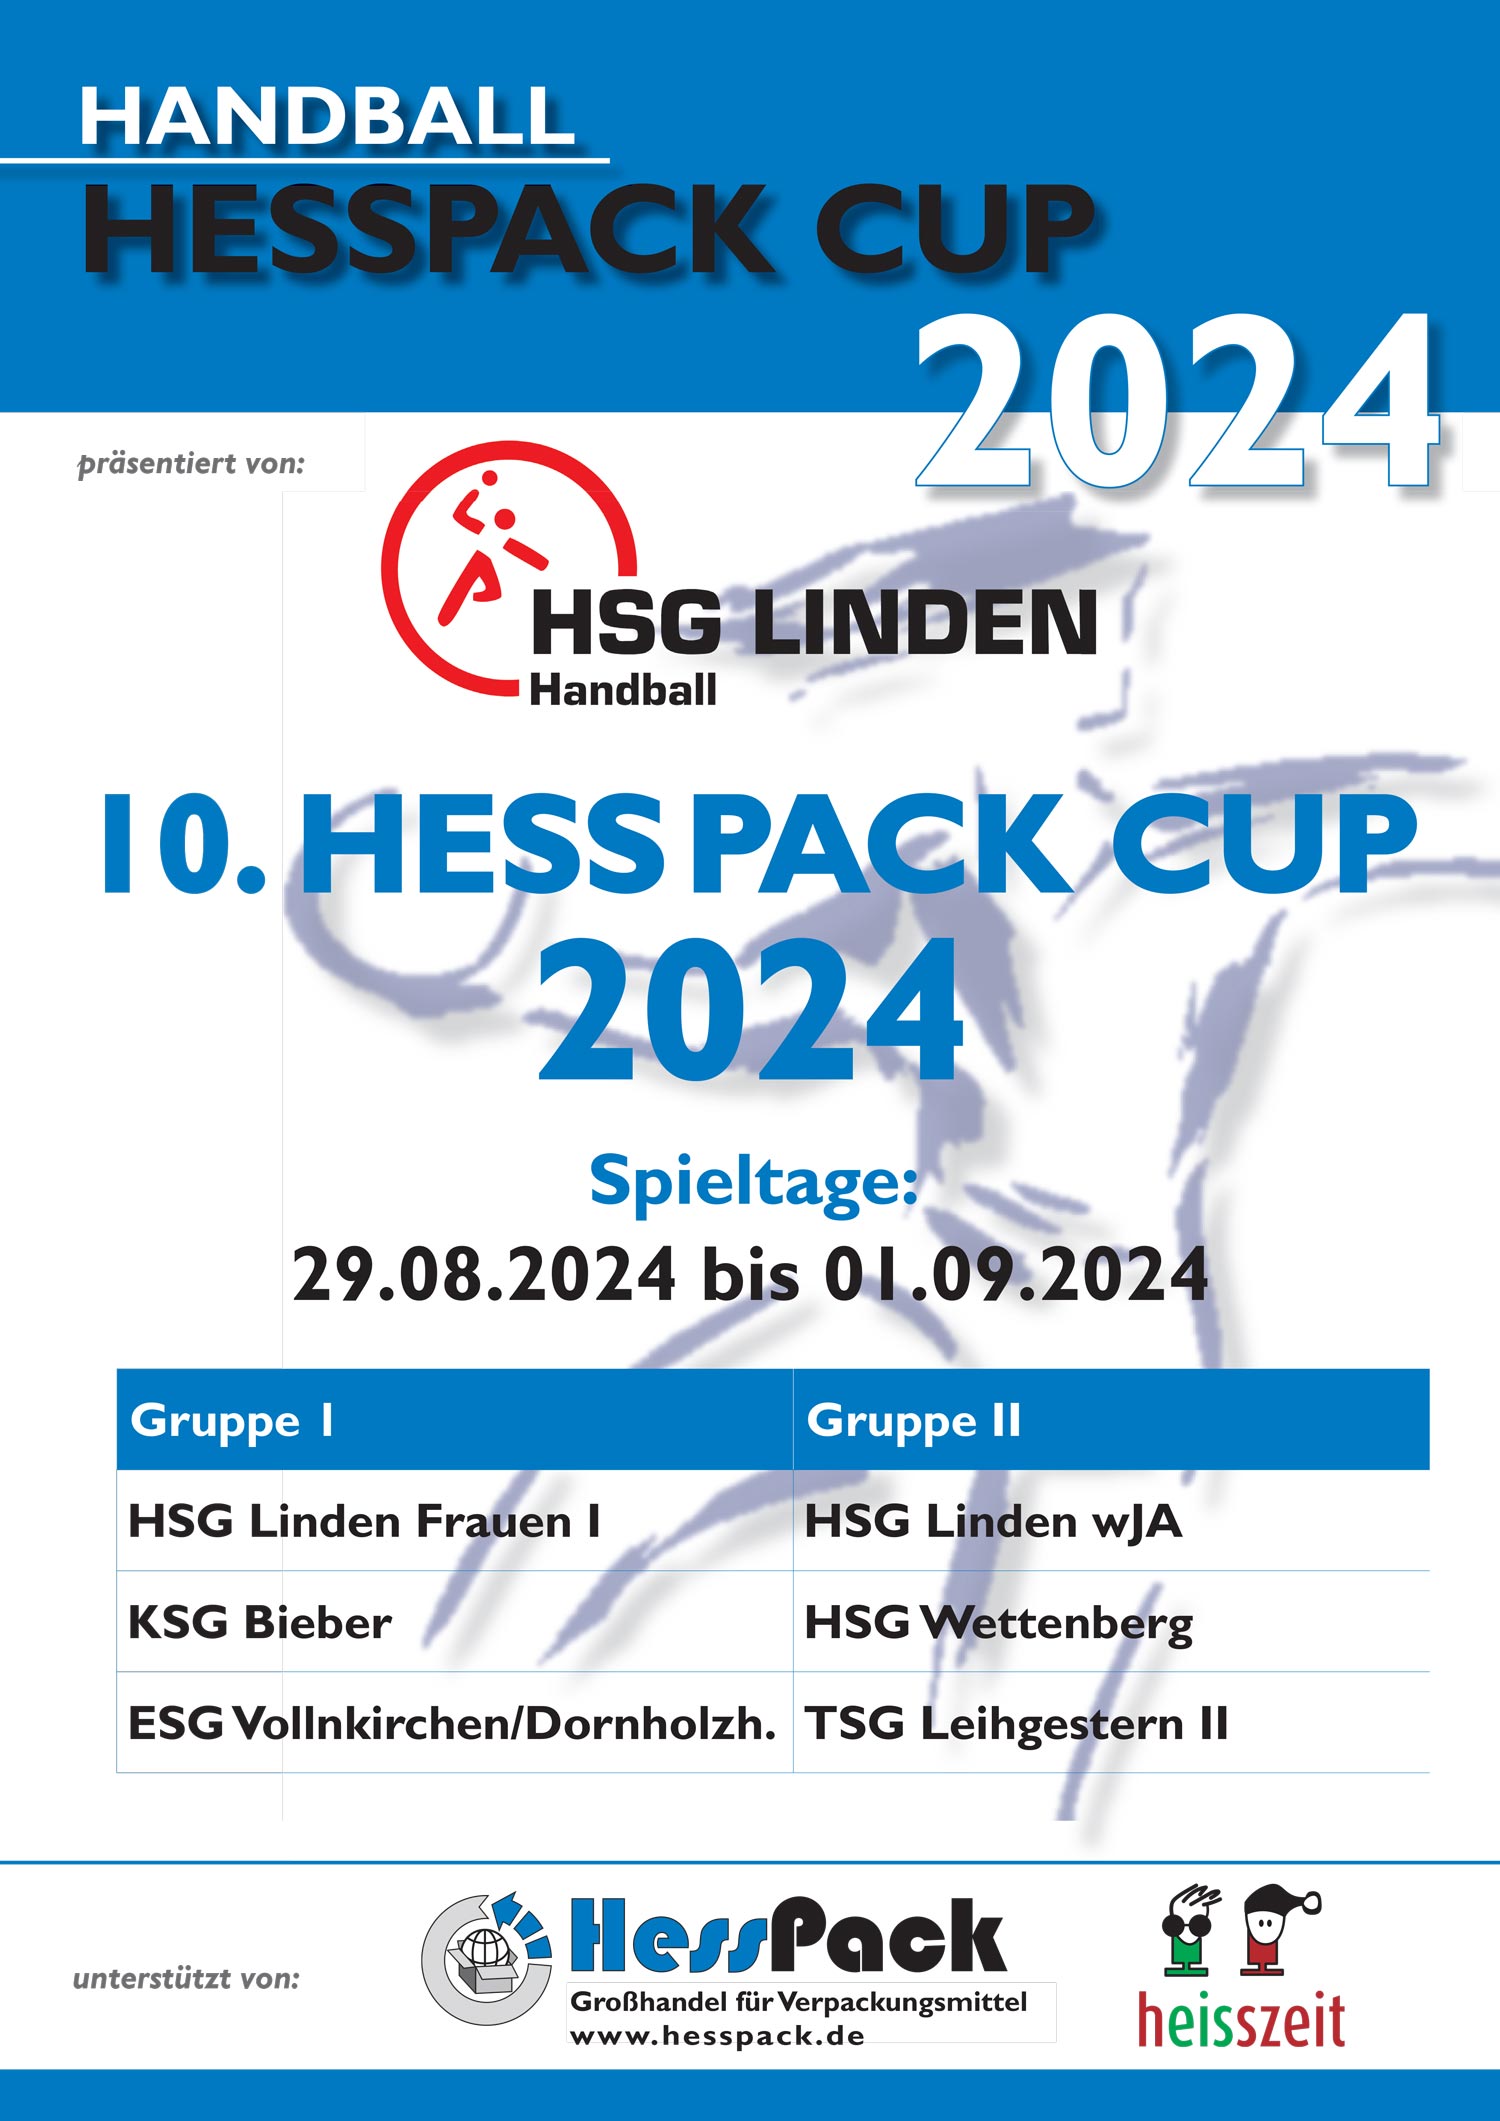 HessPack Cup 2024 a